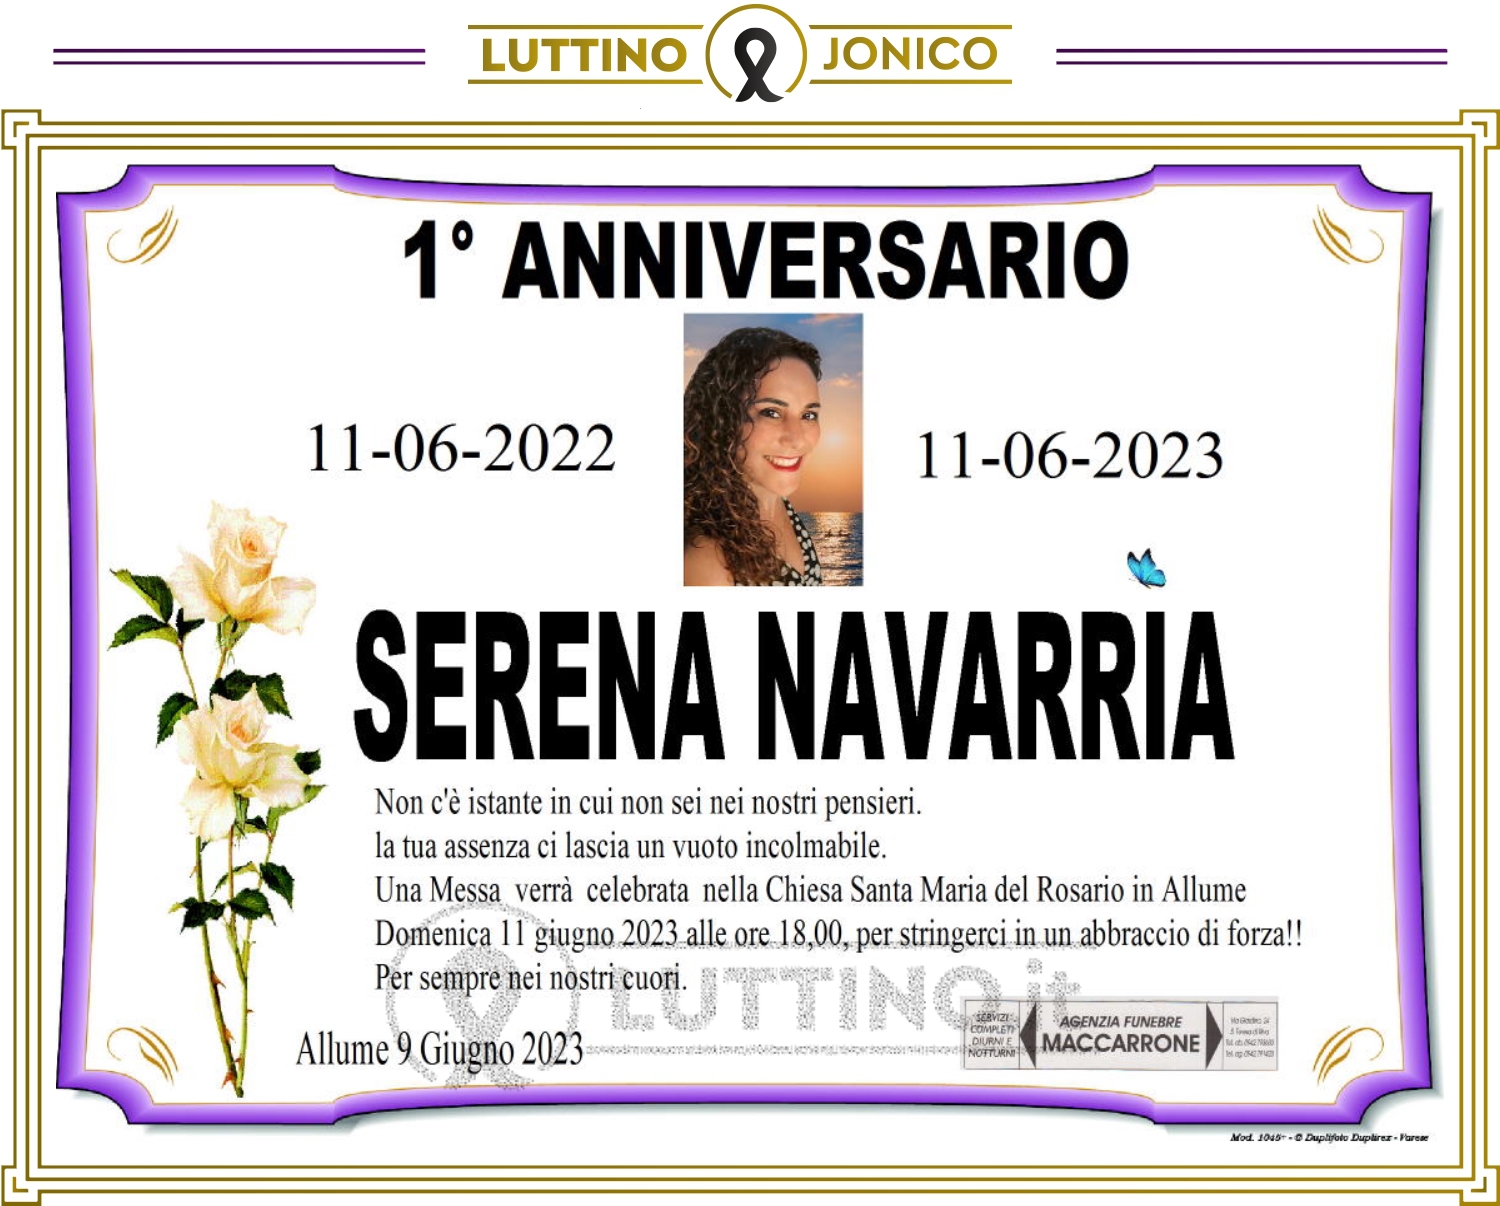 Serena Navarria